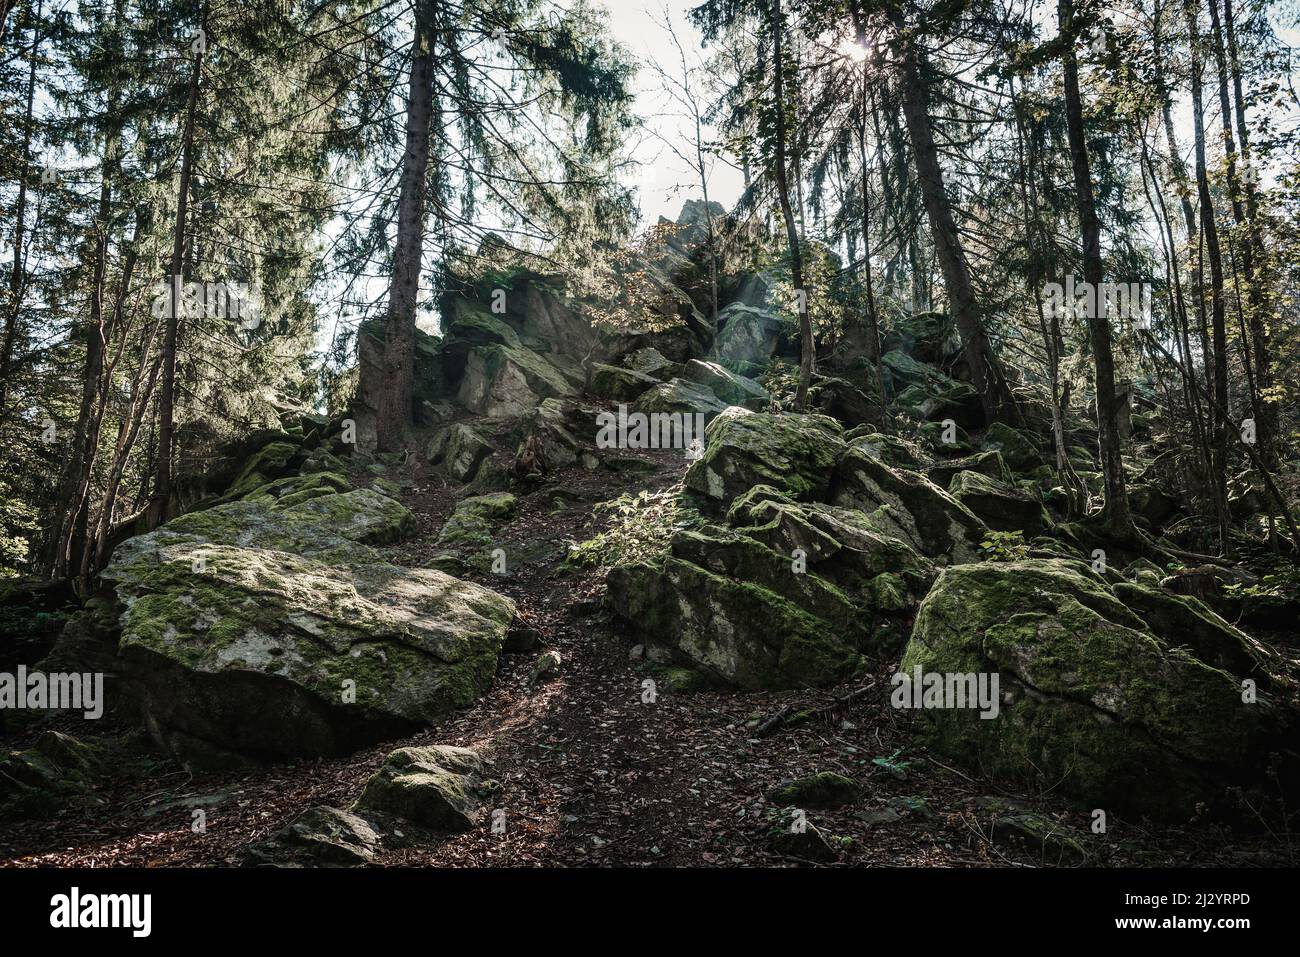 Steinwand rock formation near Poppenhausen, Rhoen, Hesse, Germany, Europe Stock Photo